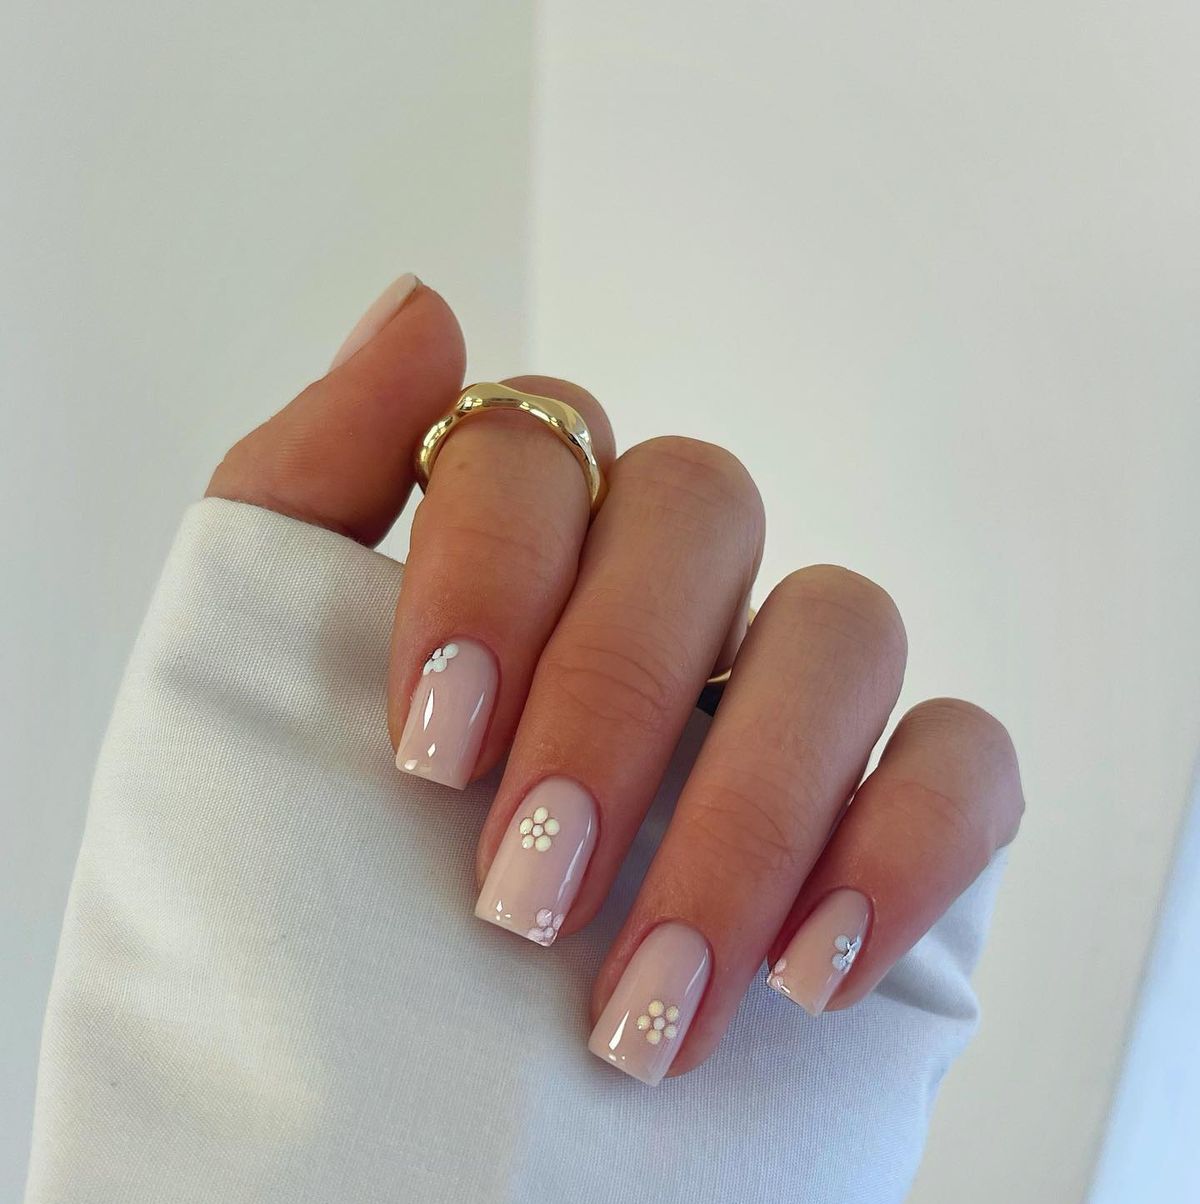 Bộ sưu tập cute nails cho những bộ móng tay đáng yêu